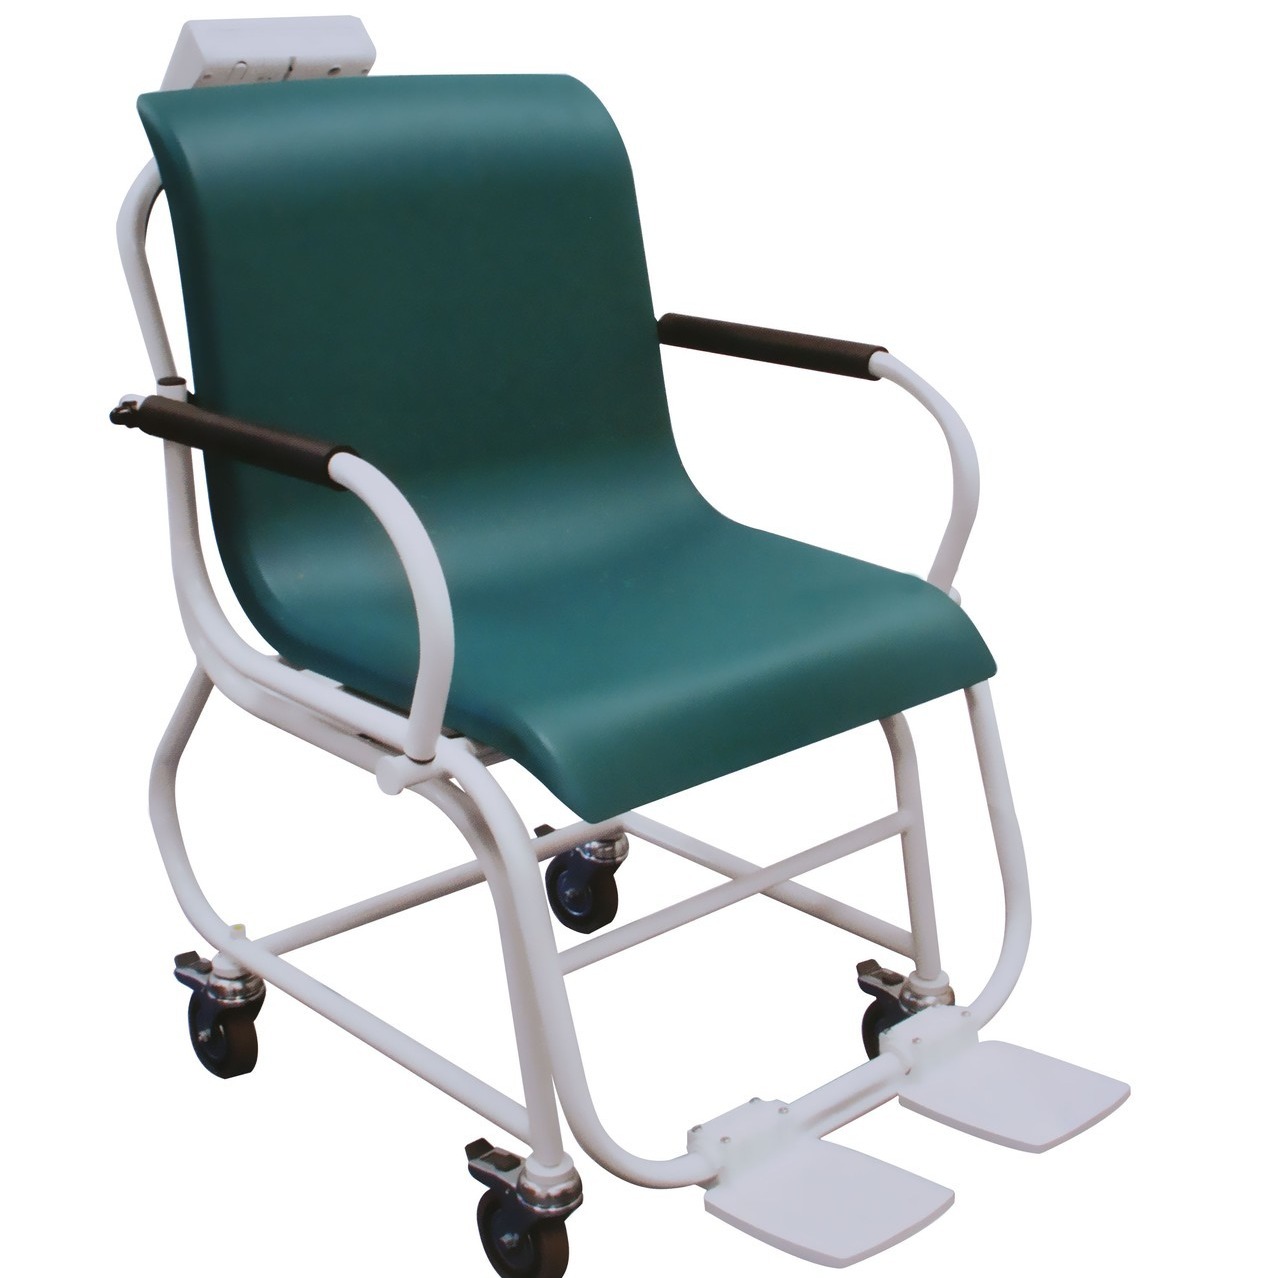 医院带通讯轮椅秤 透析体重秤 200公斤300公斤不锈钢轮椅秤